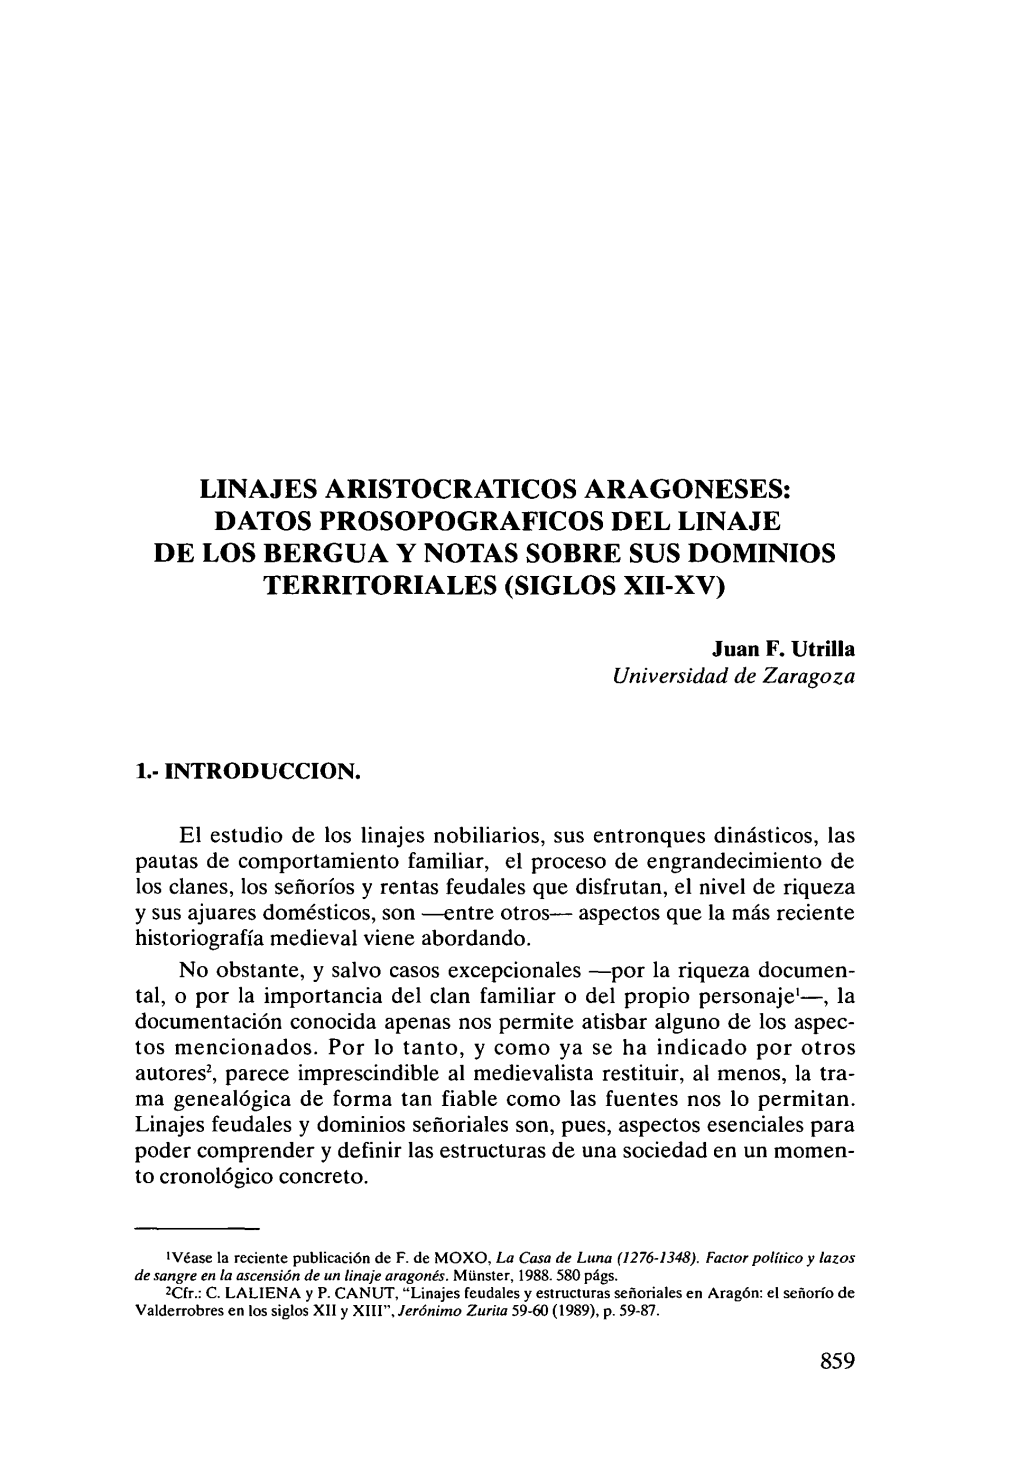 Linajes Aristocraticos Aragoneses: Datos Prosopograficos Del Linaje De Los Bergua Y Notas Sobre Sus Dominios Territoriales (Siglos Xii-Xv)